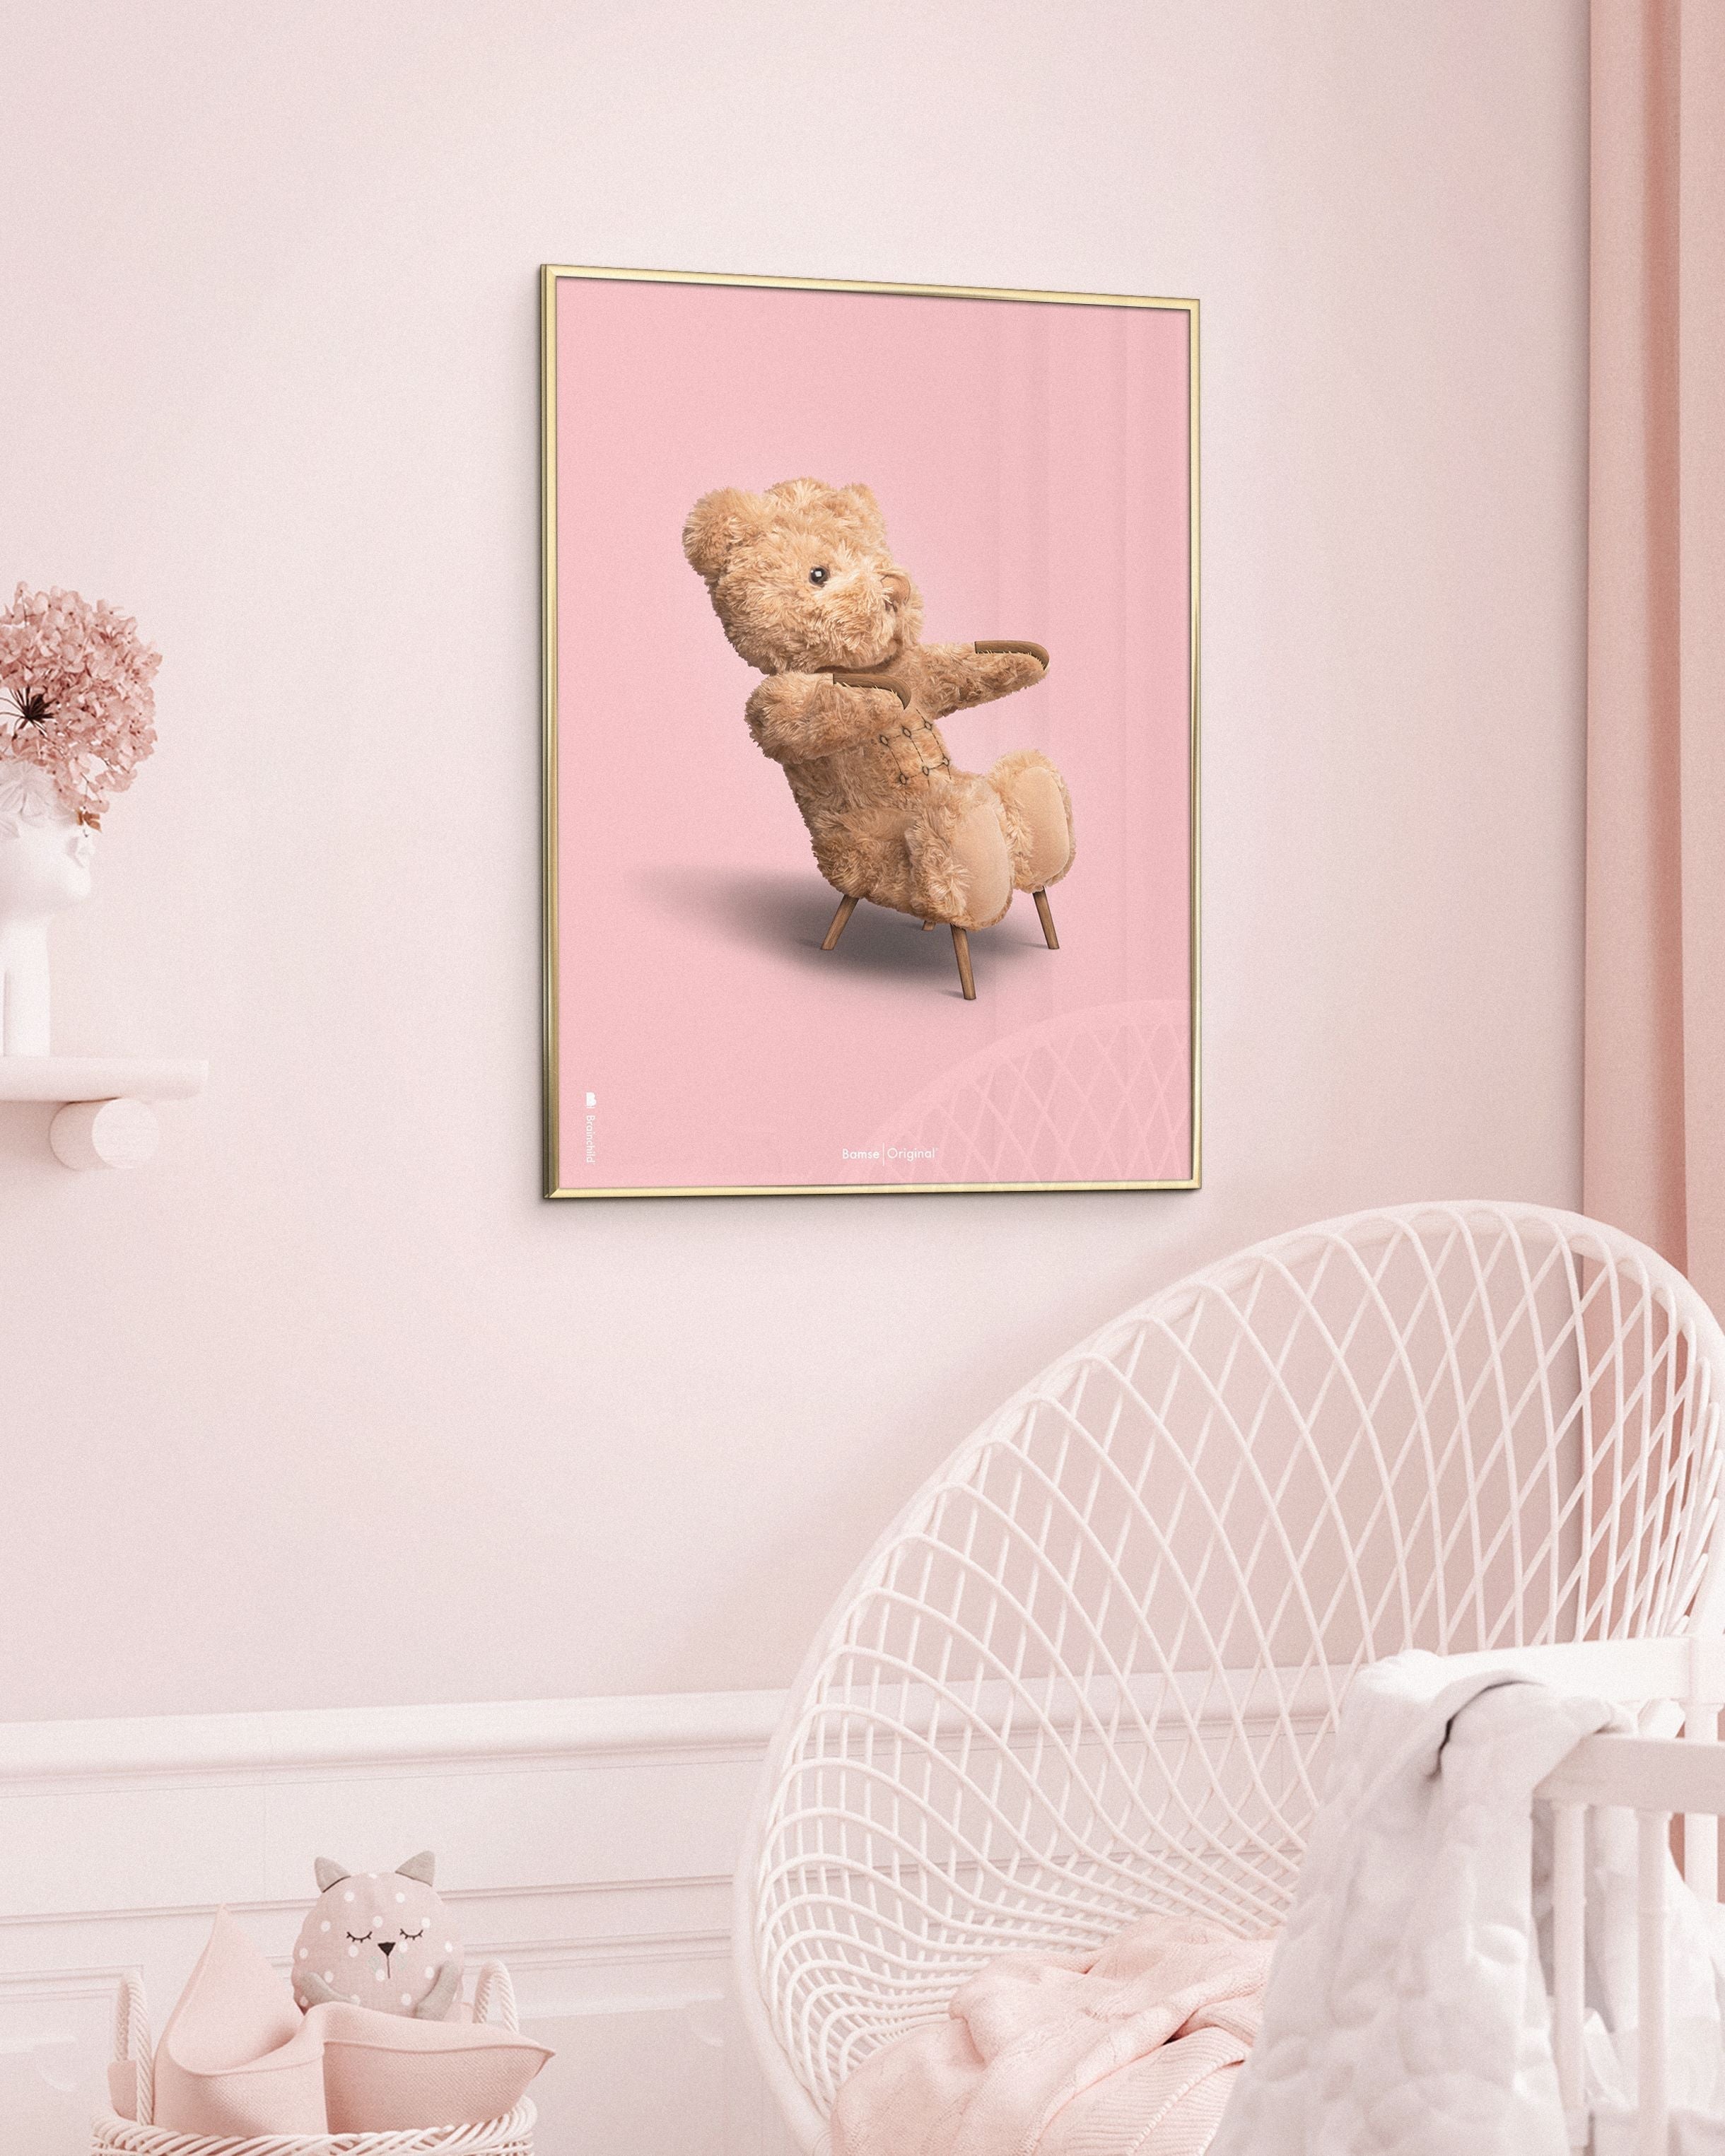 Brainchild Teddybär Classic Poster Frame In schwarz lackiertem Holz A5, rosa Hintergrund